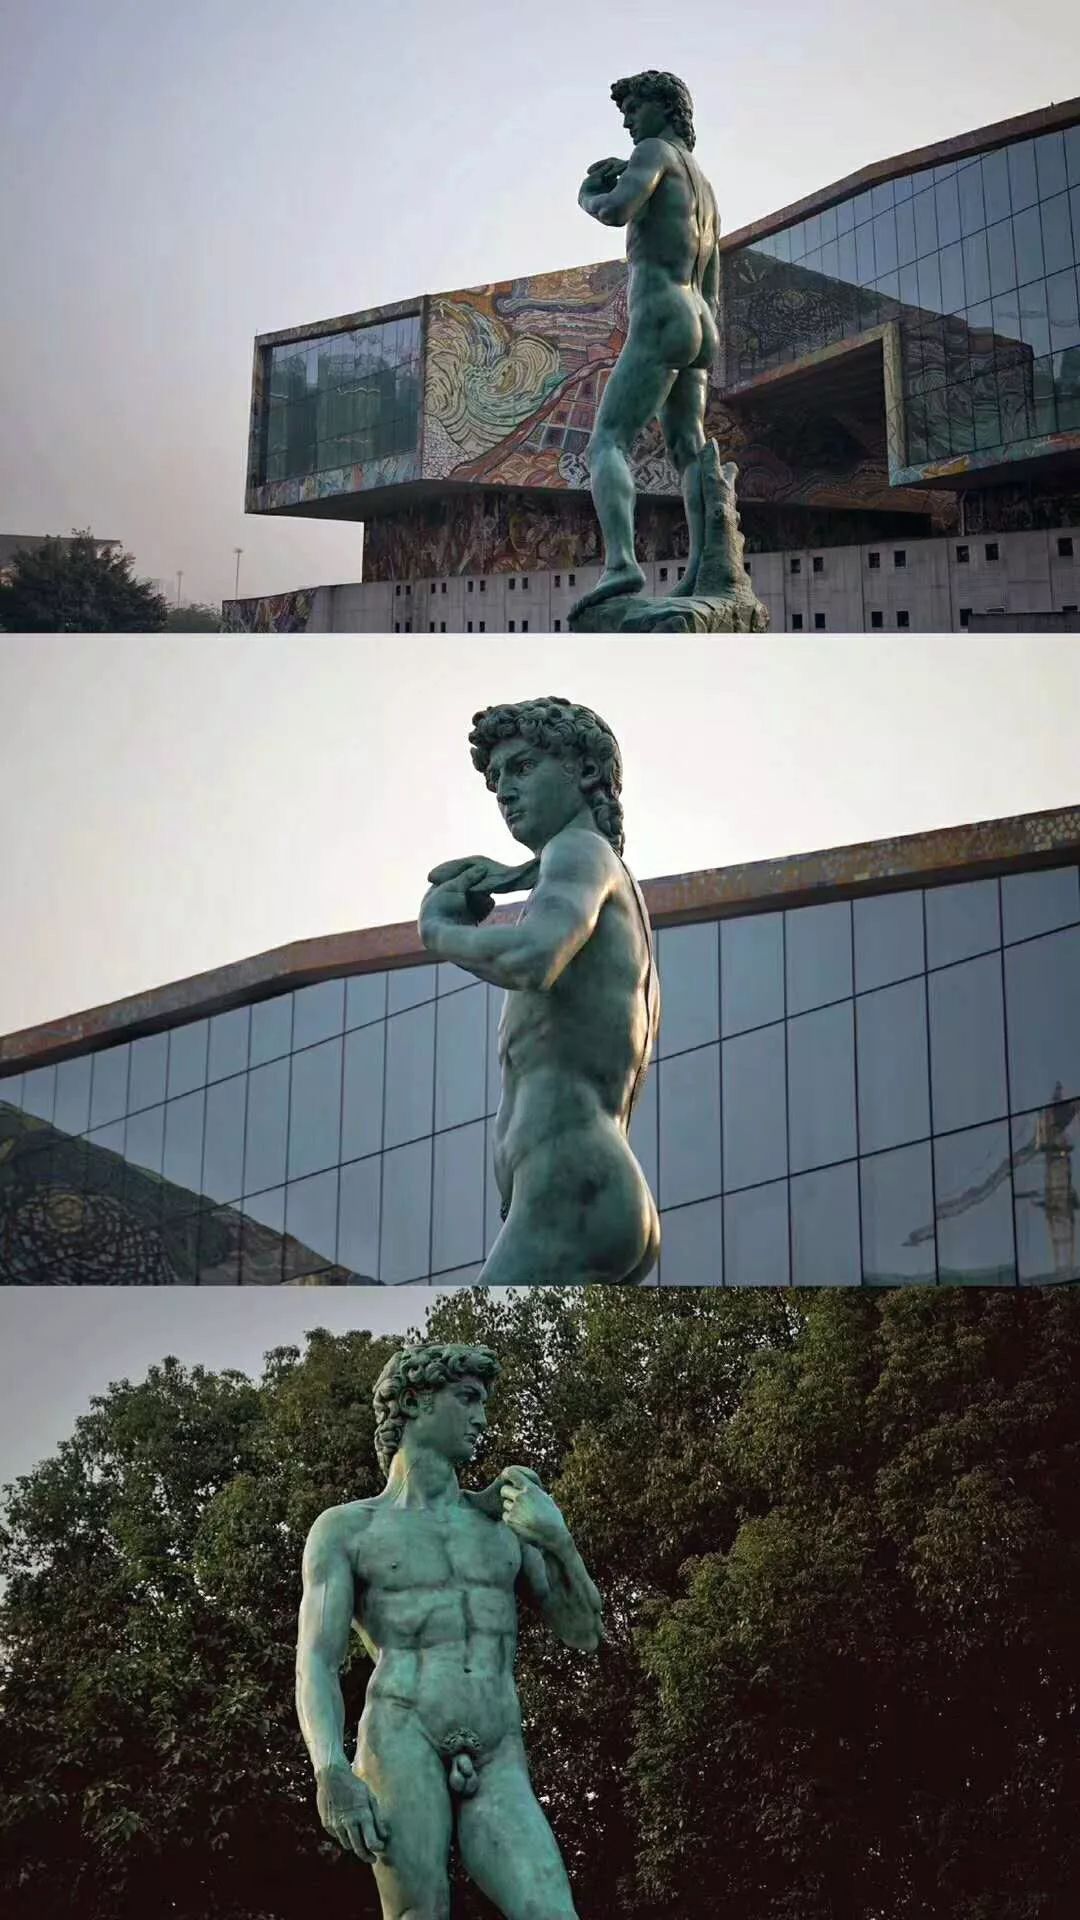 四川美术学院定制的米开朗基罗《大卫》雕塑的原模青铜复制品,经过近